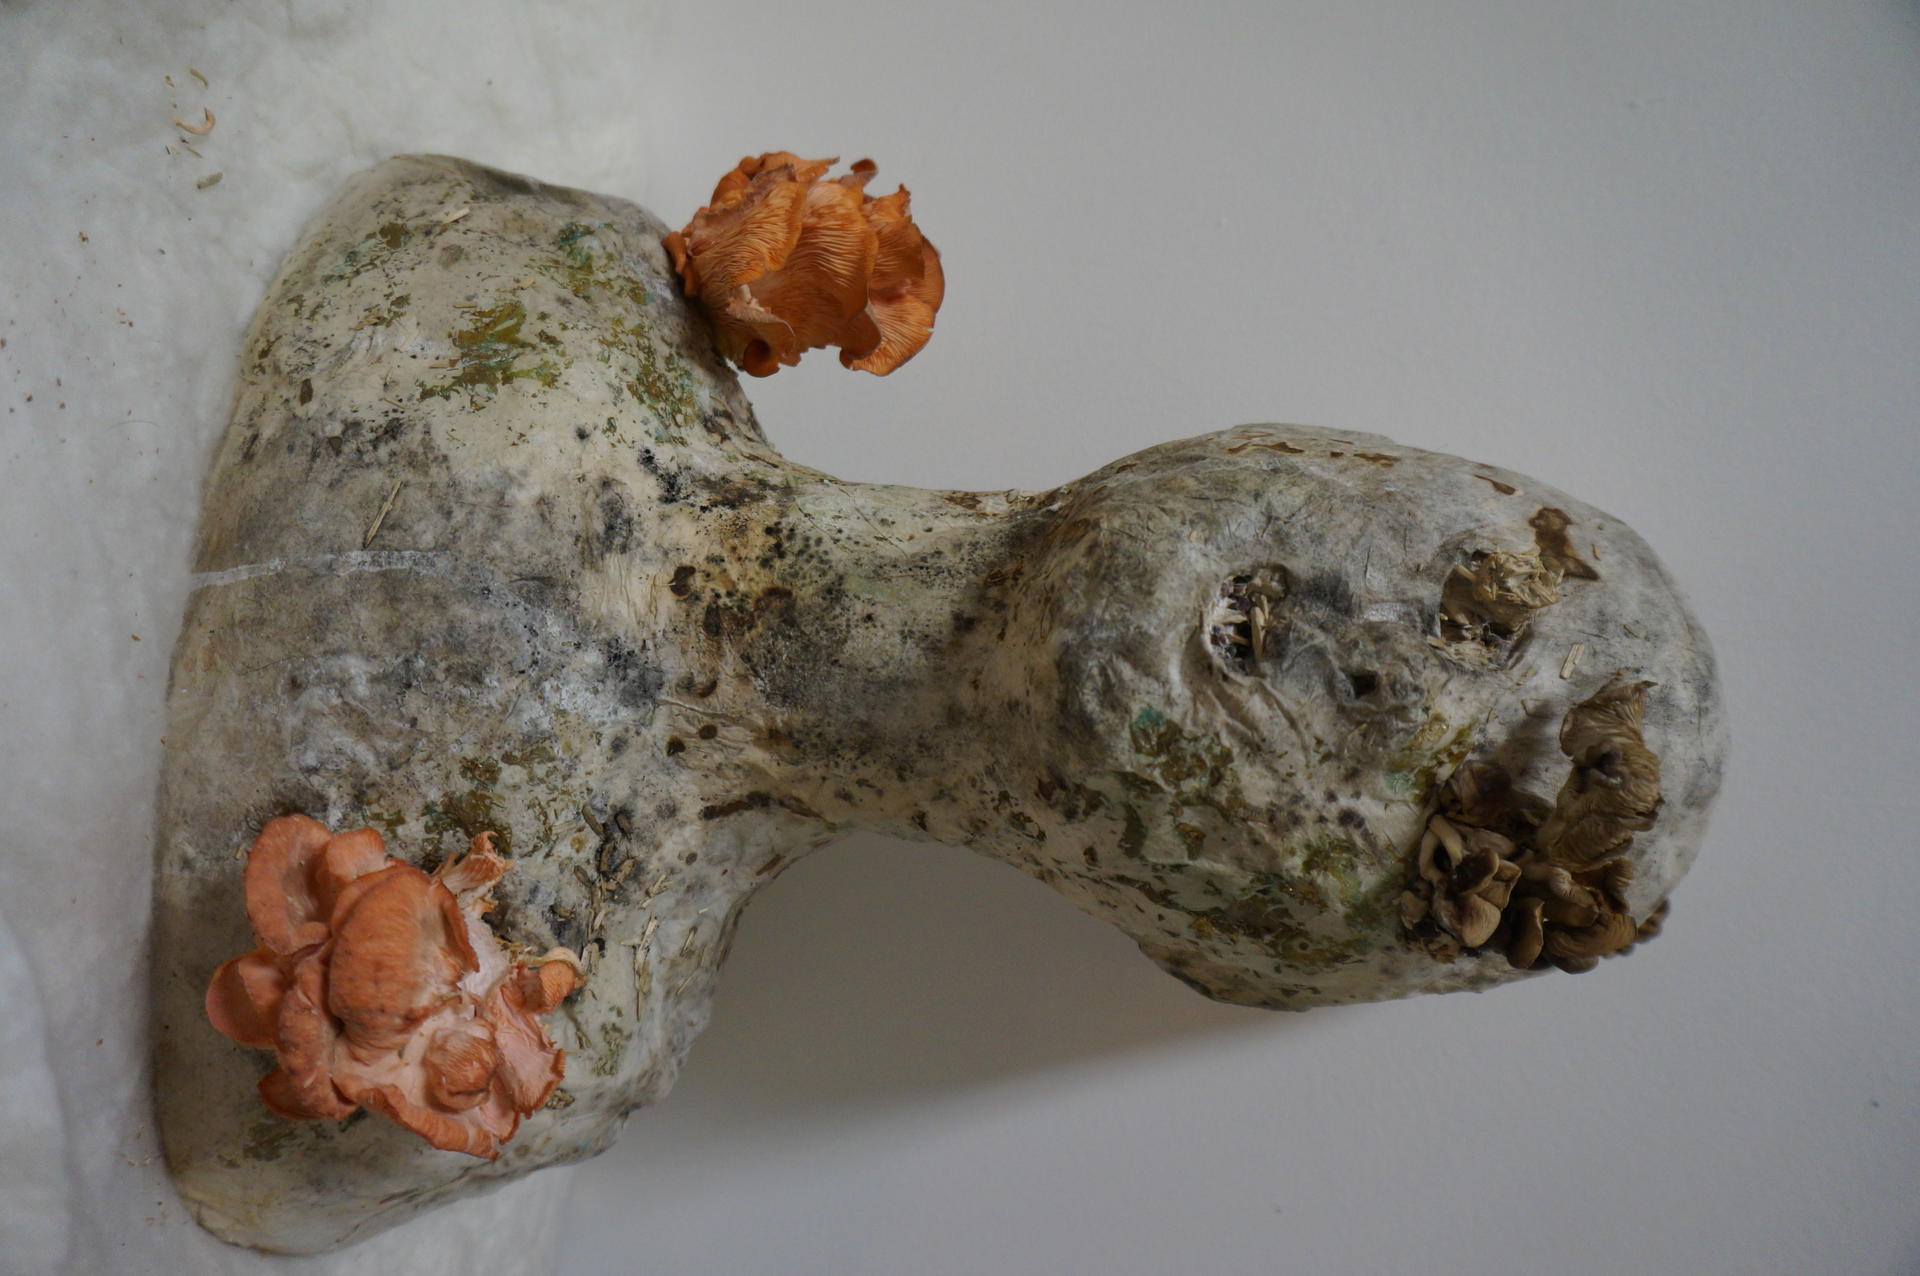 Head stuff with mycelium mushroom  emerge.